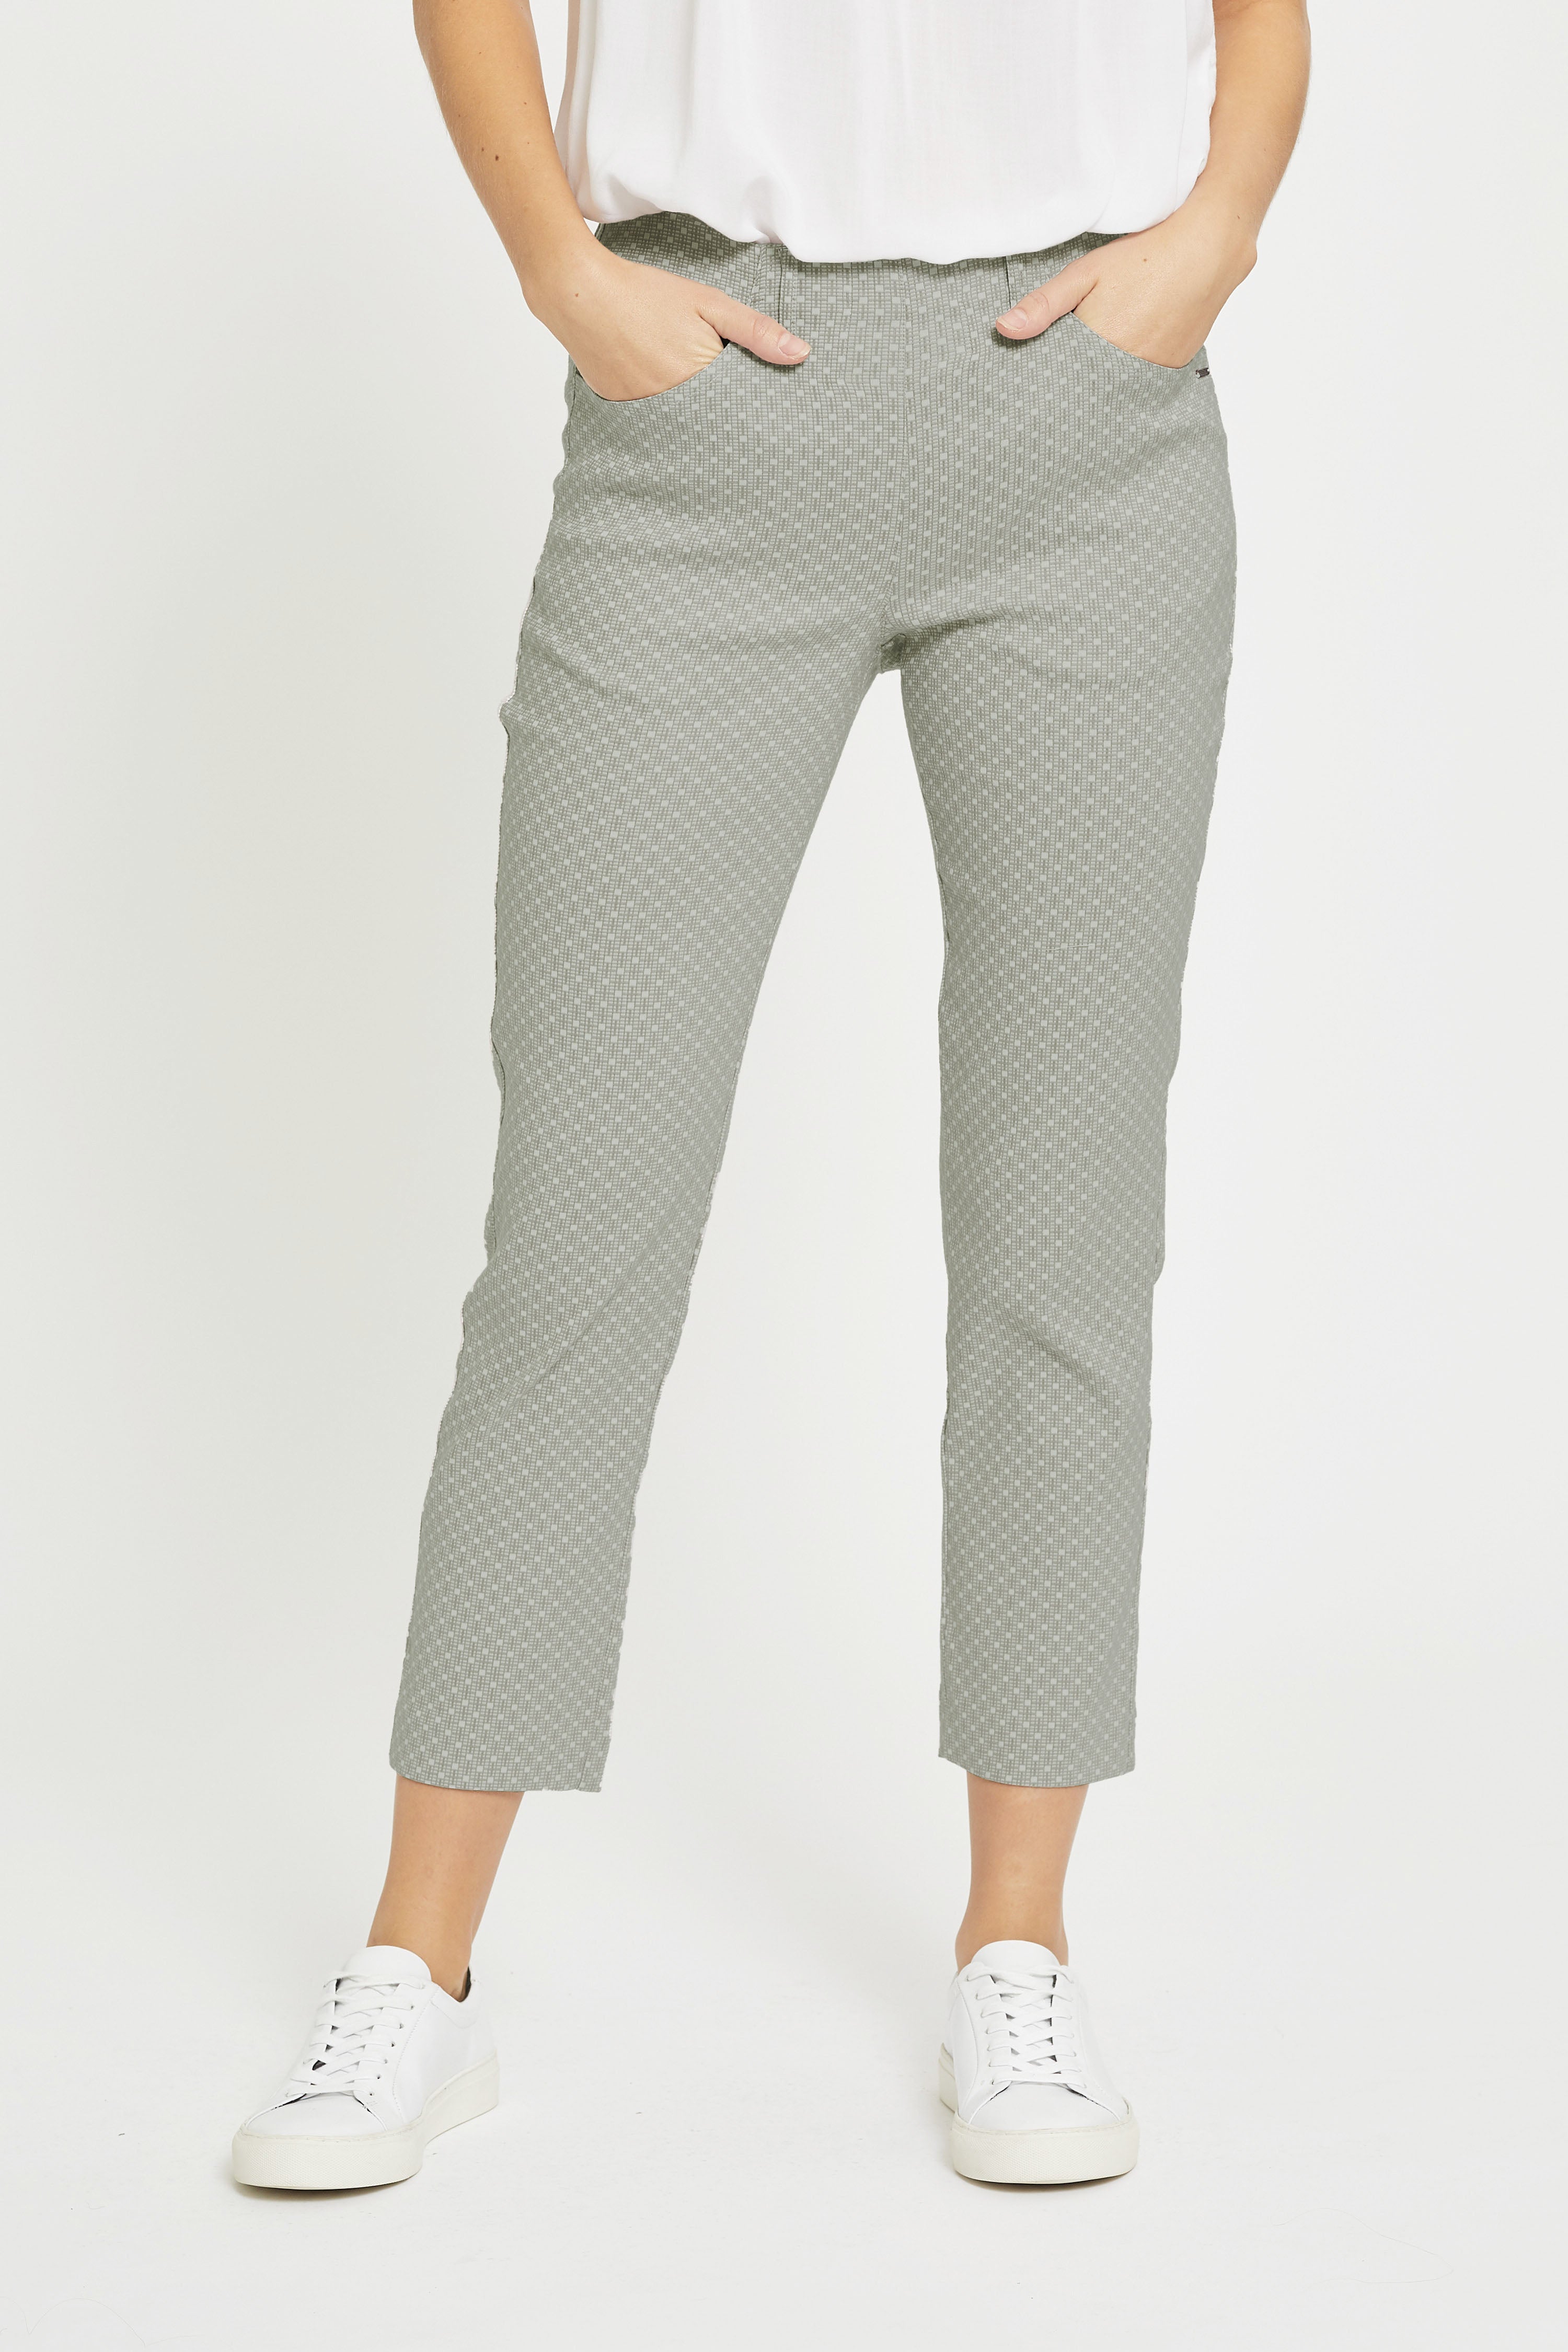 LAURIE Grace - Crop Trousers SLIM 55716 Khaki Jacquard